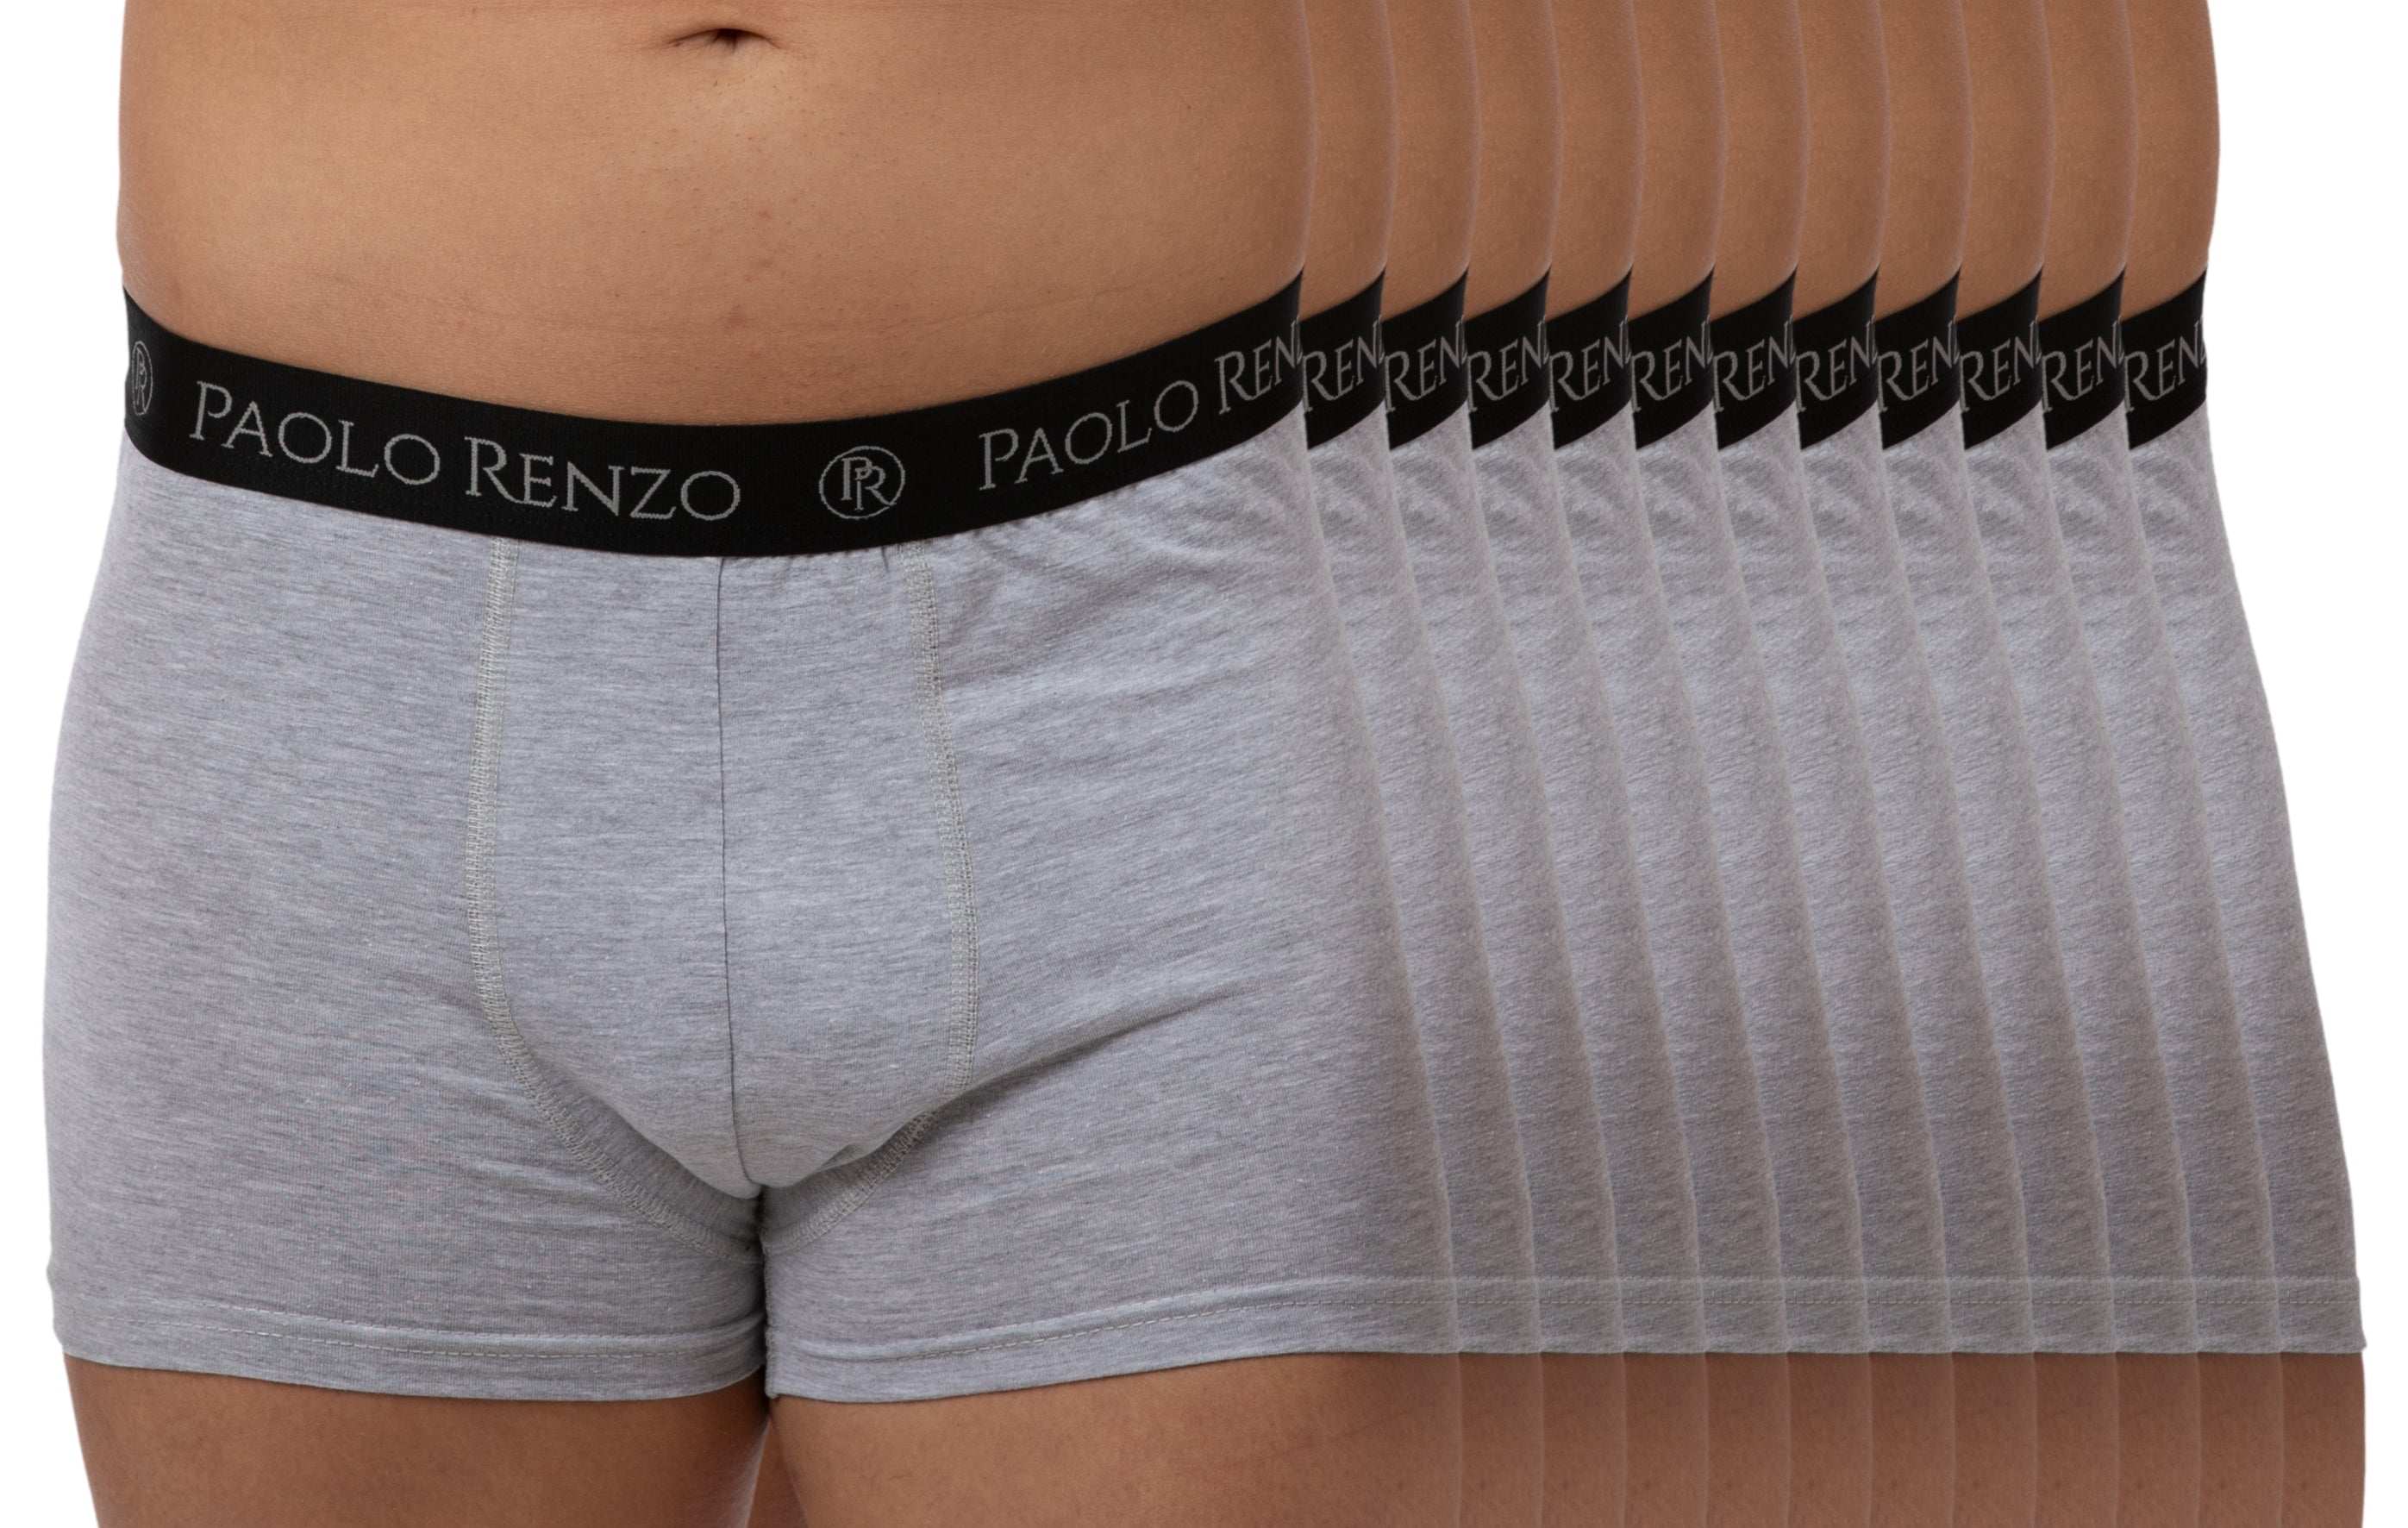 Paolo Renzo® Hipster Boxershorts 3/6 oder 12 Stück - Größen M, L, XL, –  Traumpreisfabrik